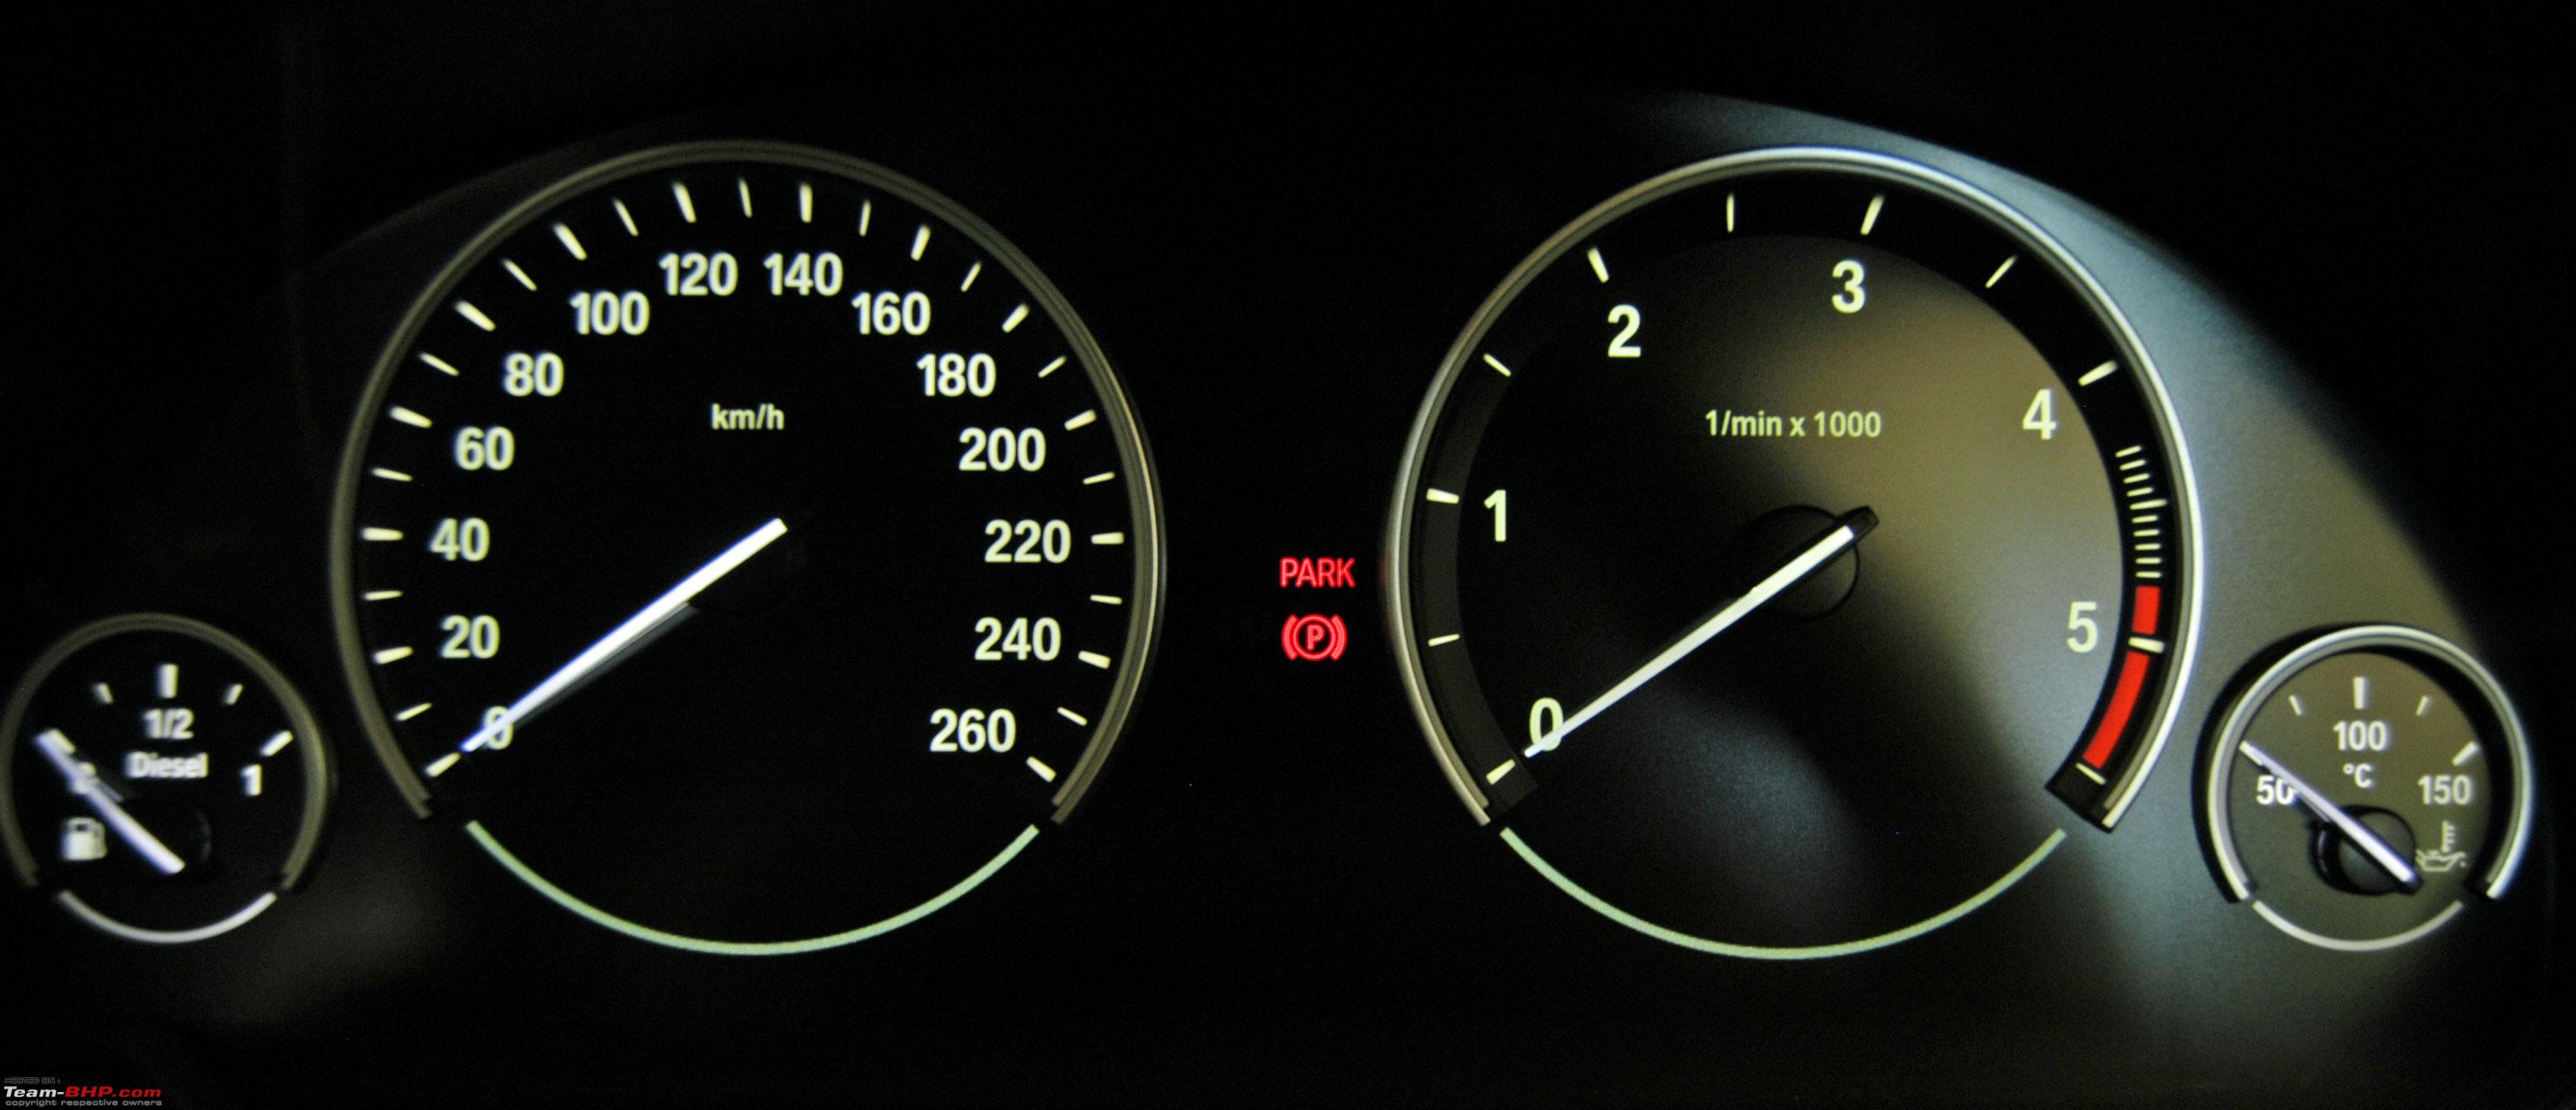 Разгон bmw x5. Расход топлива BMW x6 3.0. Загорается перегрев двигателя BMW x1. Картинка экрана блокировки BMW x5 e53.